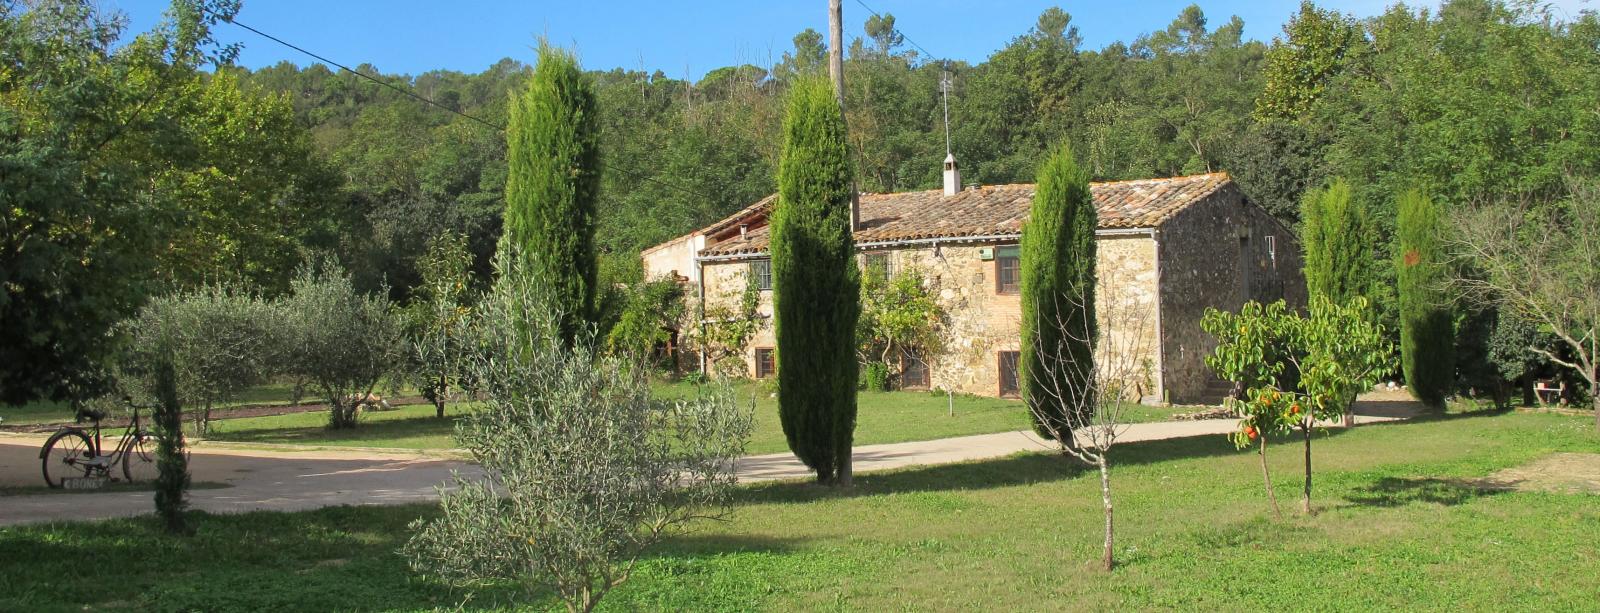 El turisme rural guanya terreny a les comarques de Barcelona i creix un 31% respecte del setembre del 2016